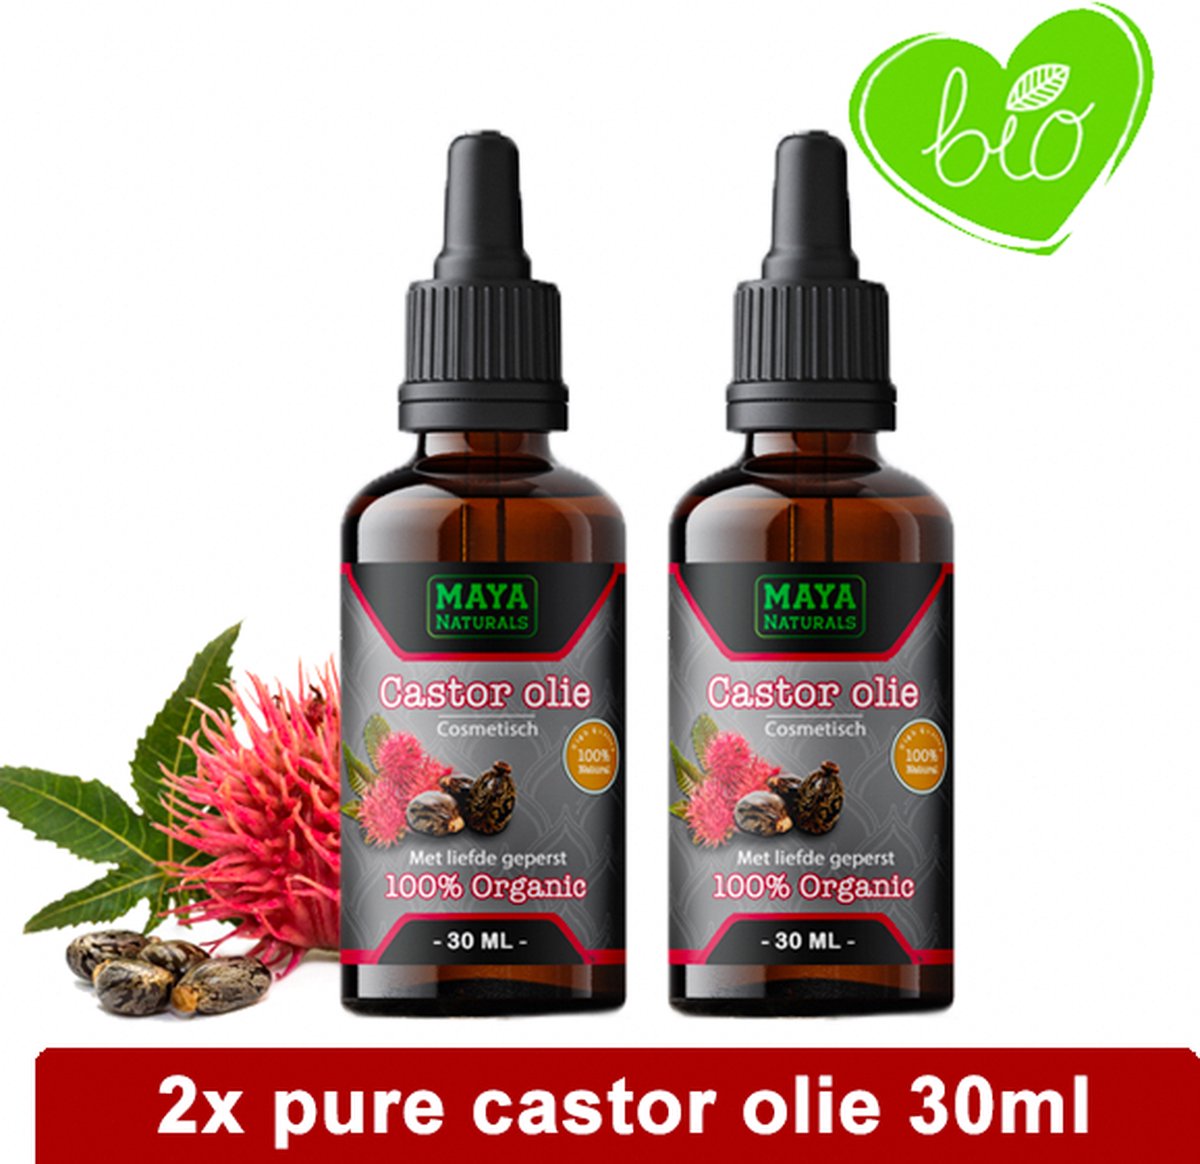 Natuurlijke Castor olie 2x 30ml | 100% Puur & Onbewerkt EU Bio keurmerk | Castor oil | castor olie wimpers & haar